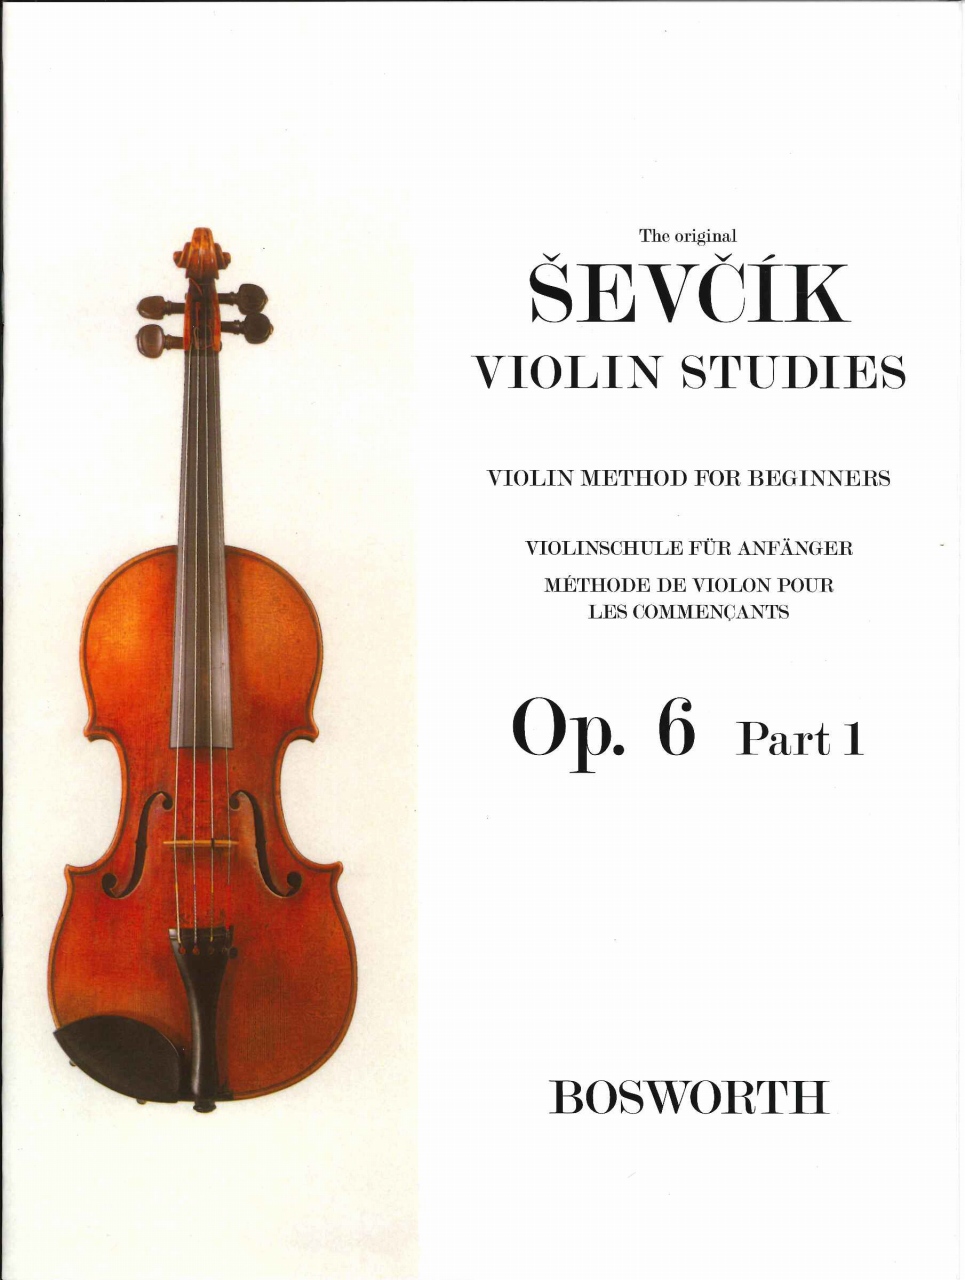 Op.1 Part 1 Violon 